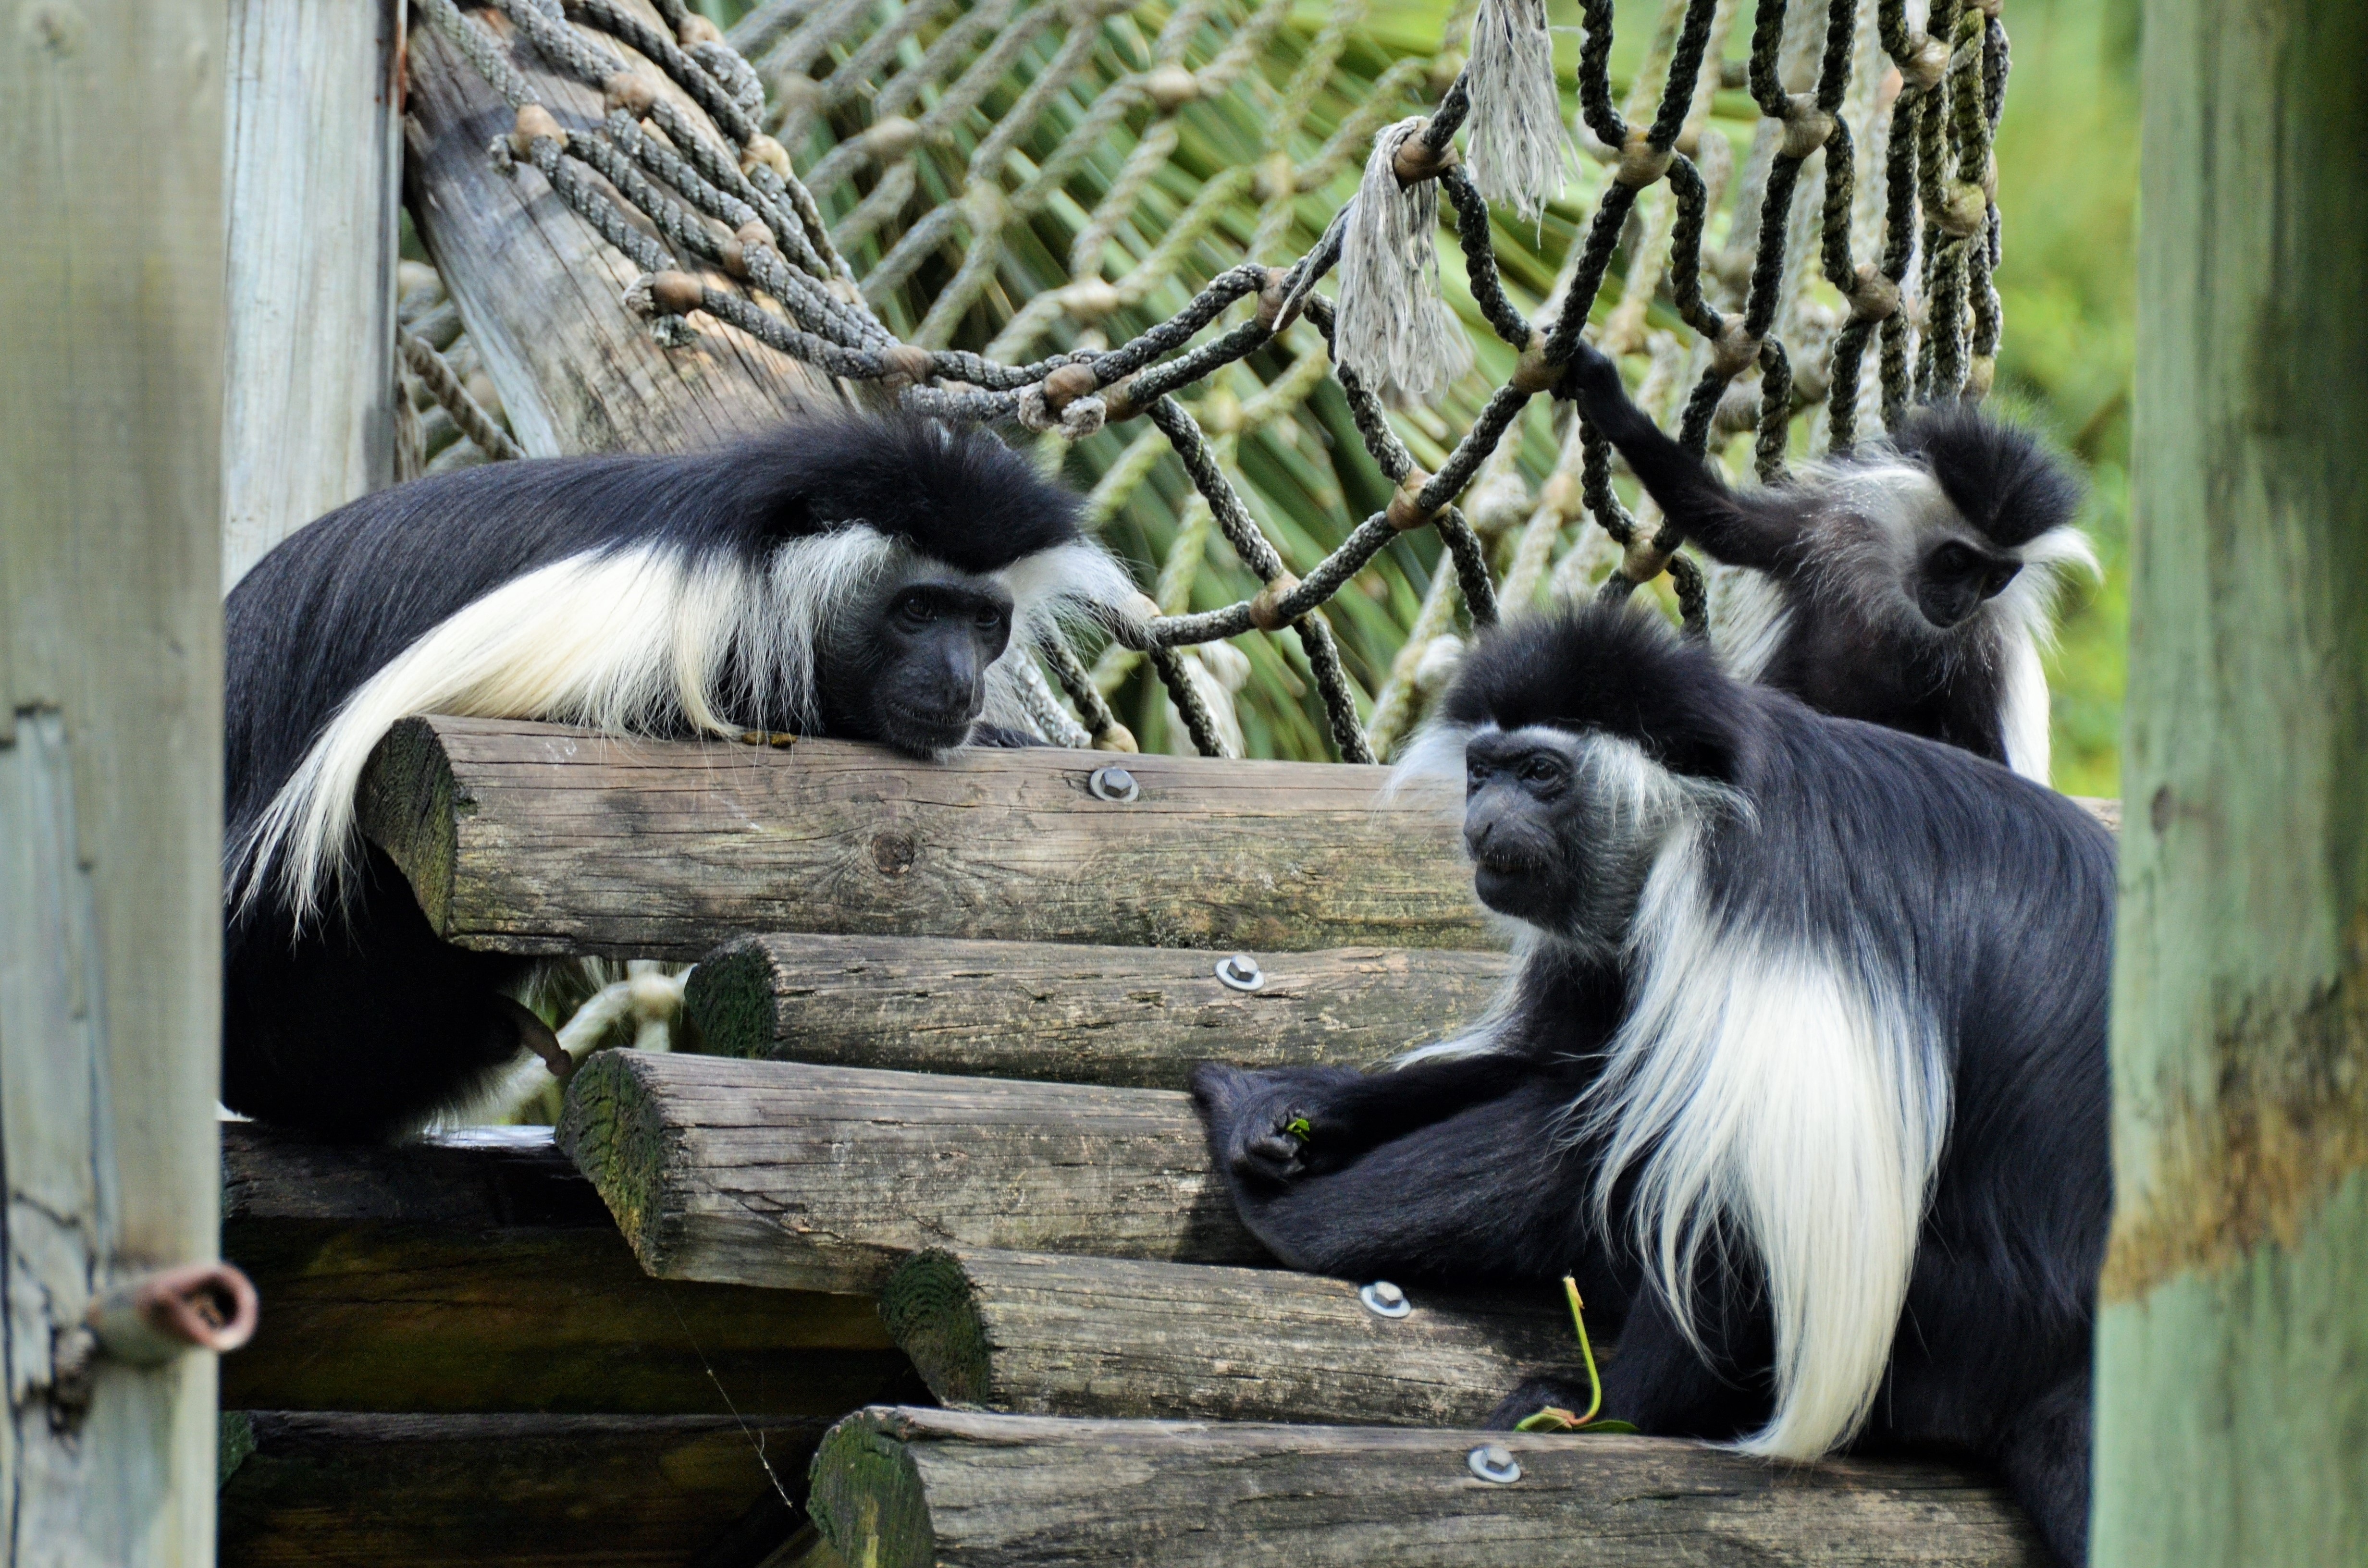 three black and white long coated monkeys